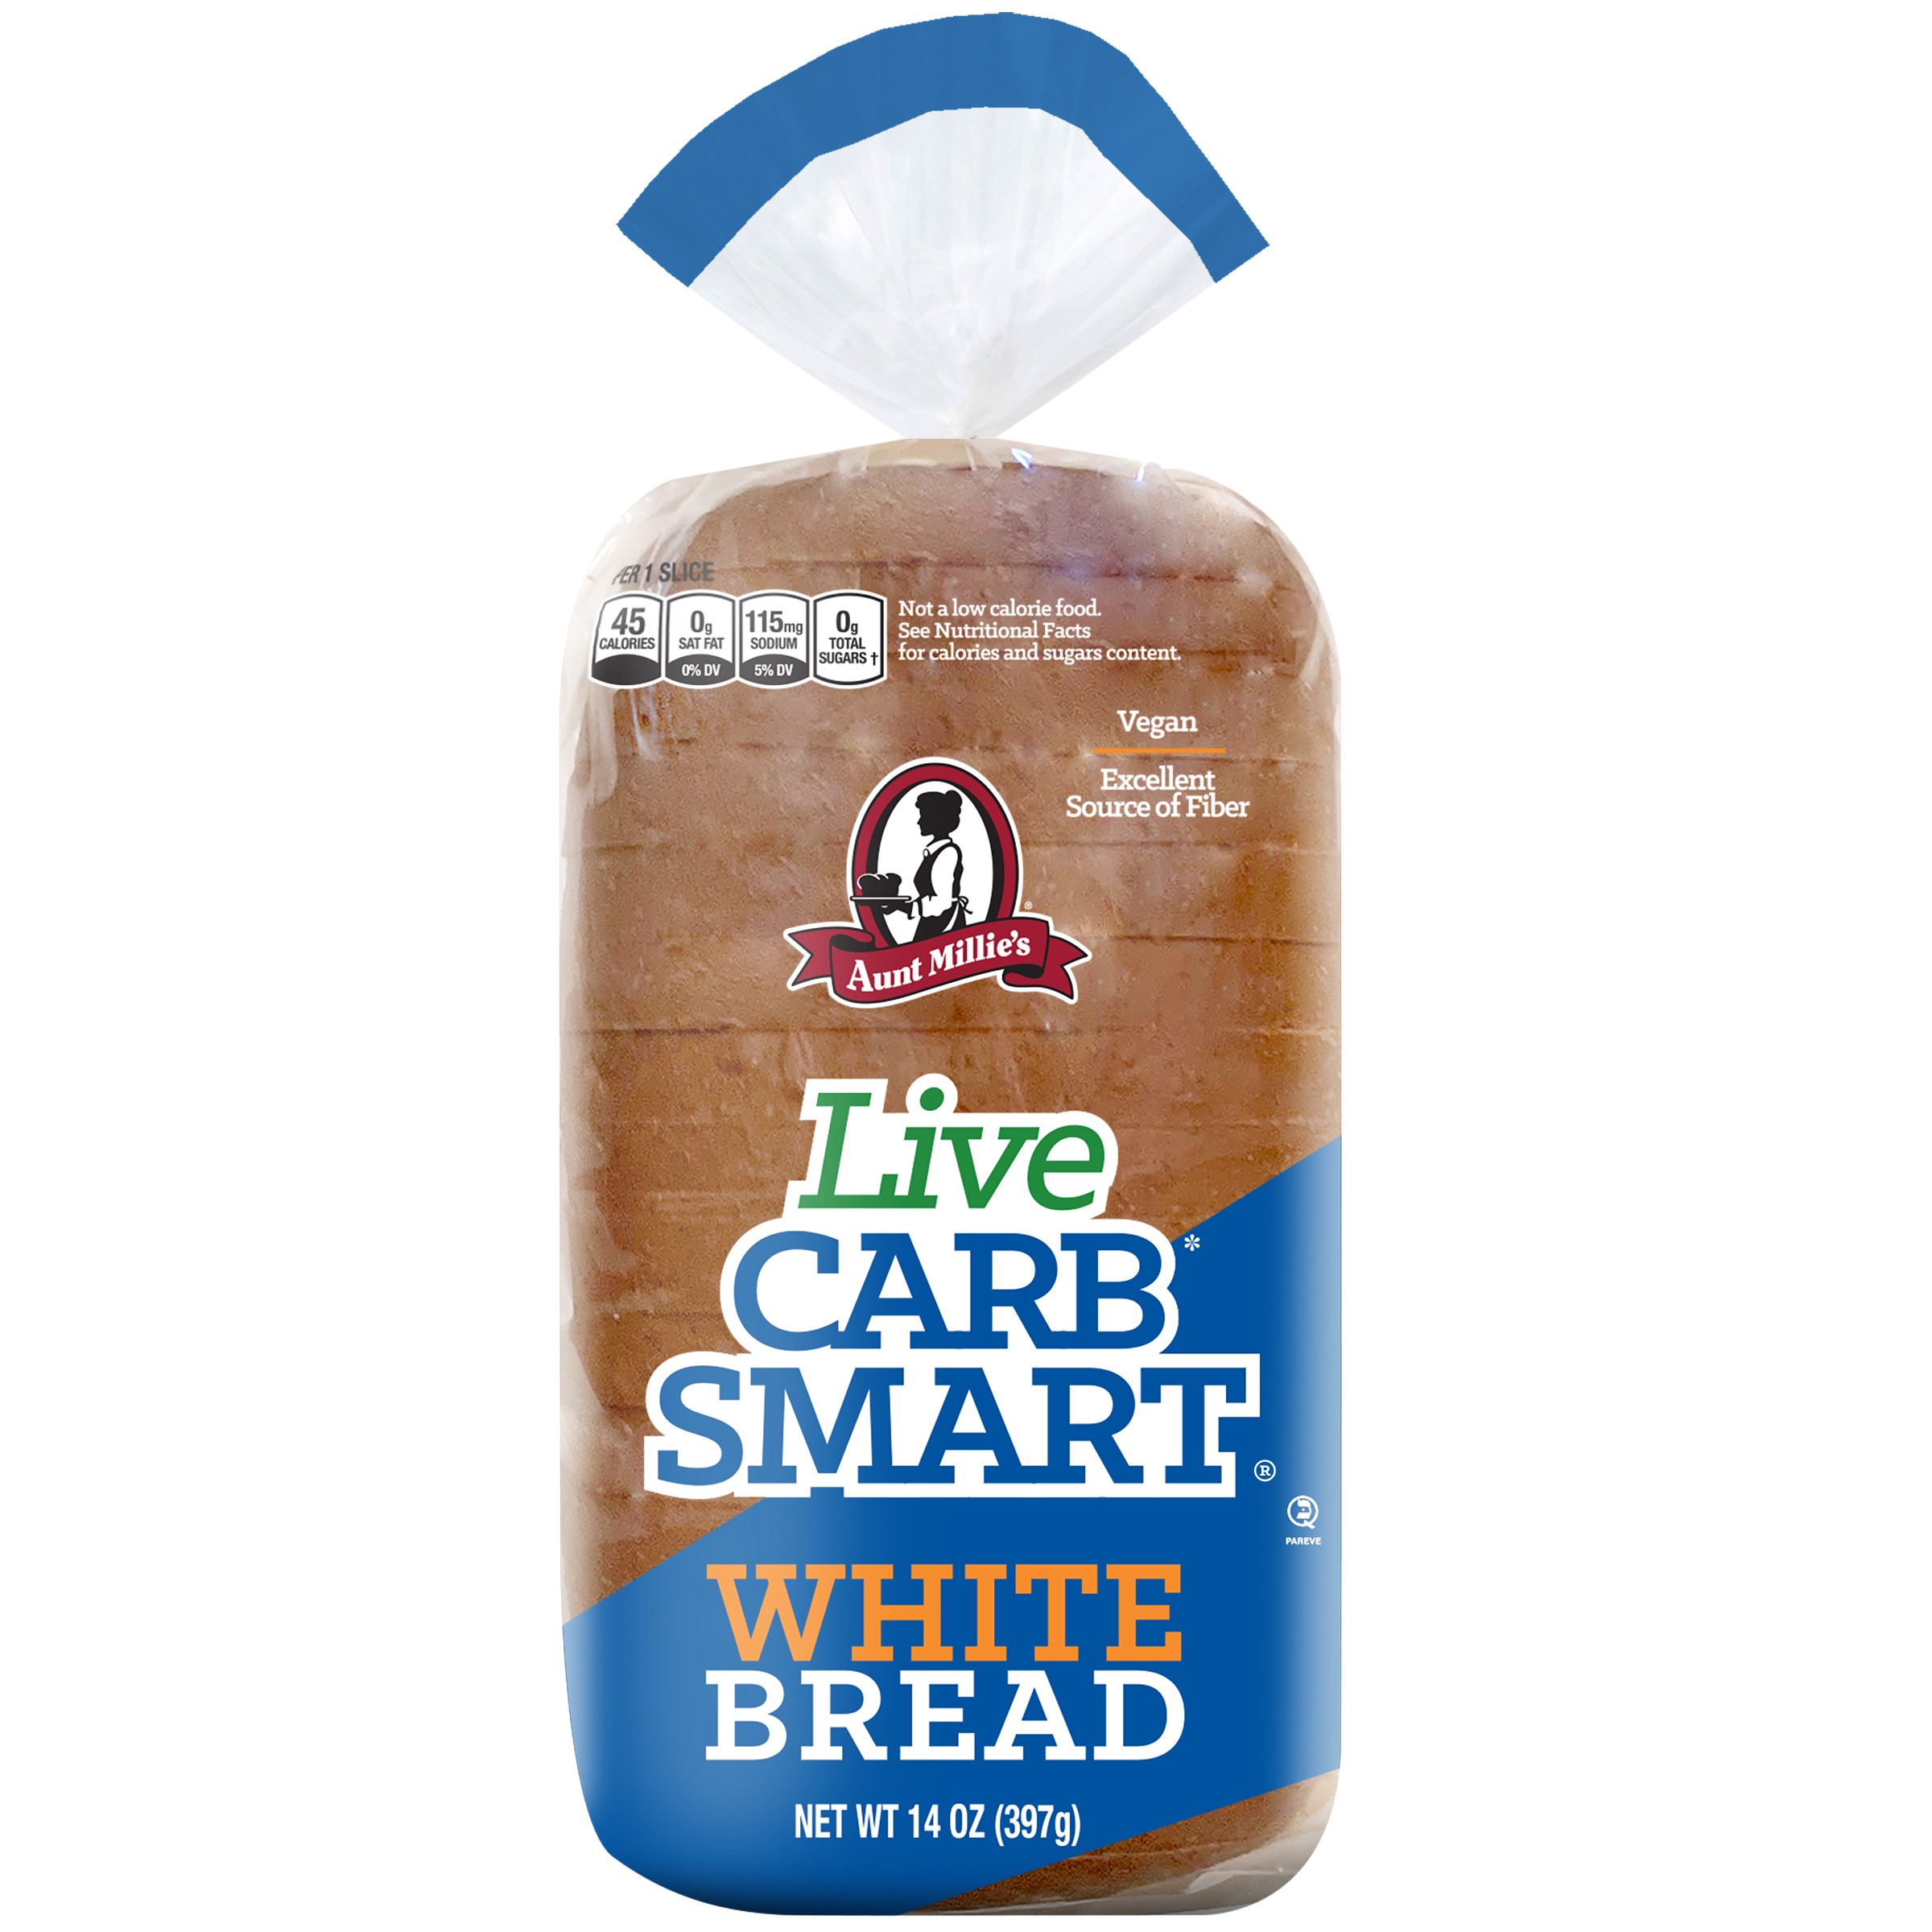 Carb Smart White Bread